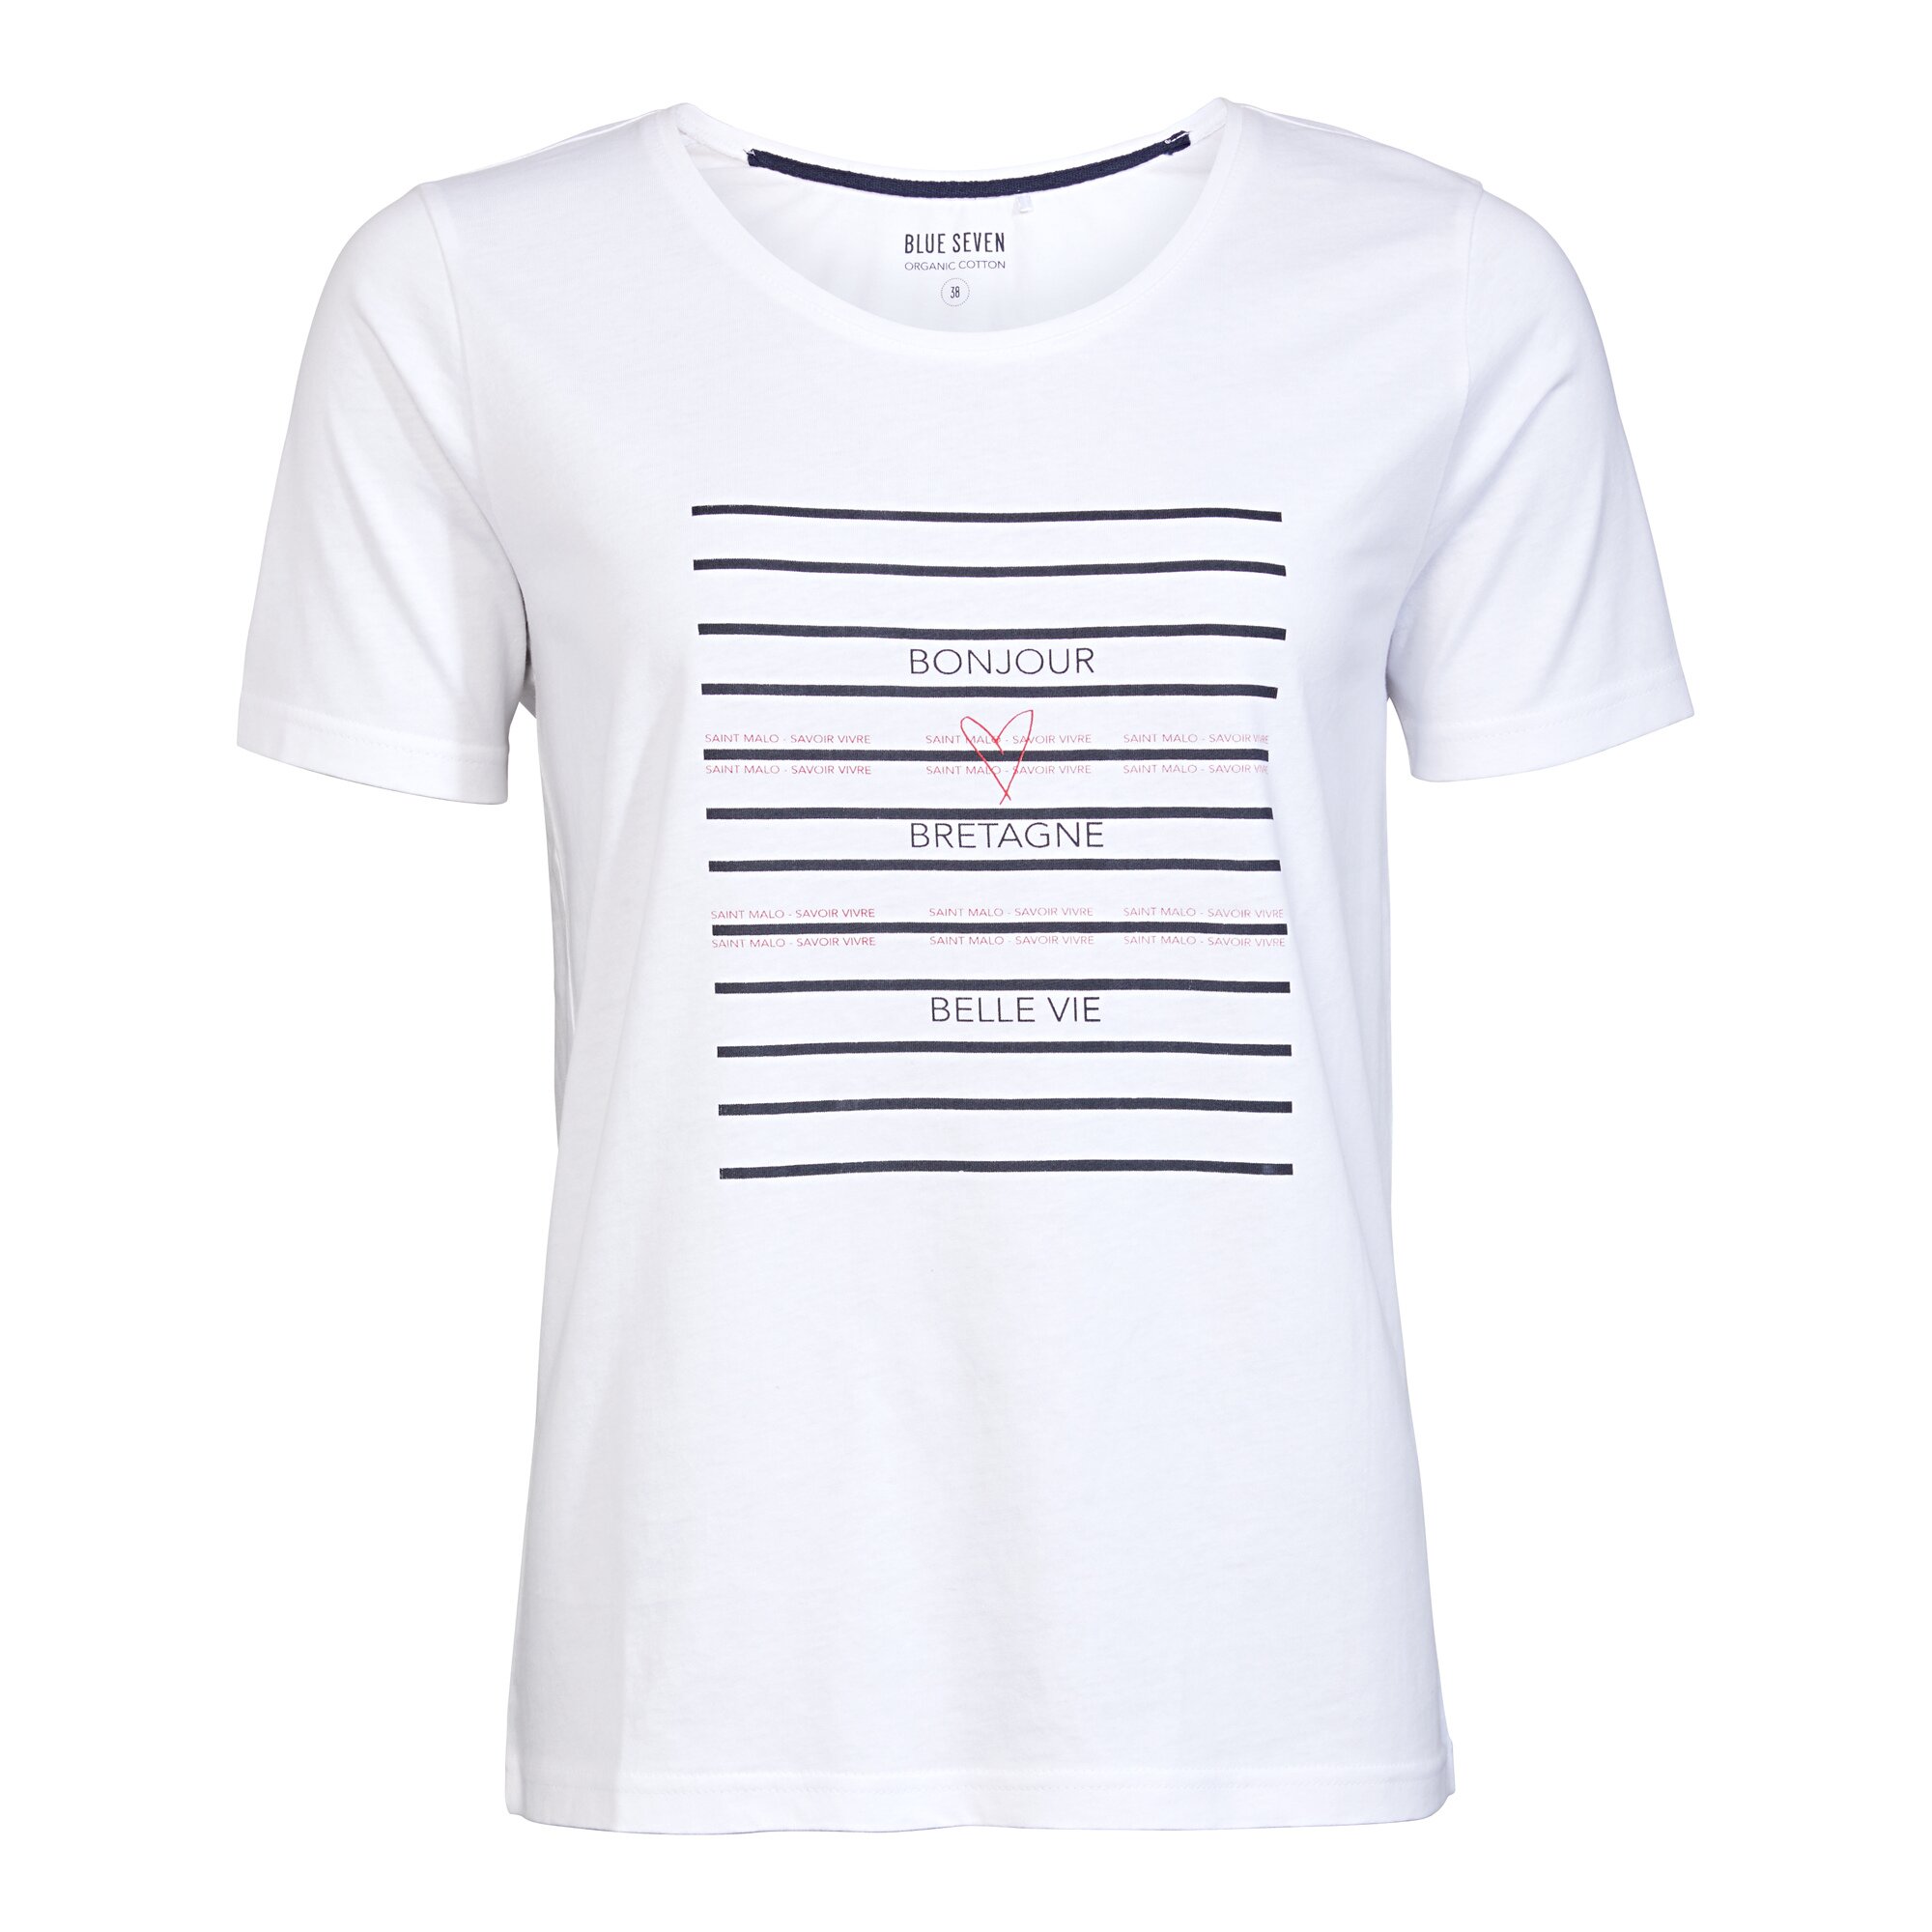 Image of Damen-T-Shirt "Saint Malo", Größe: 42, weiß